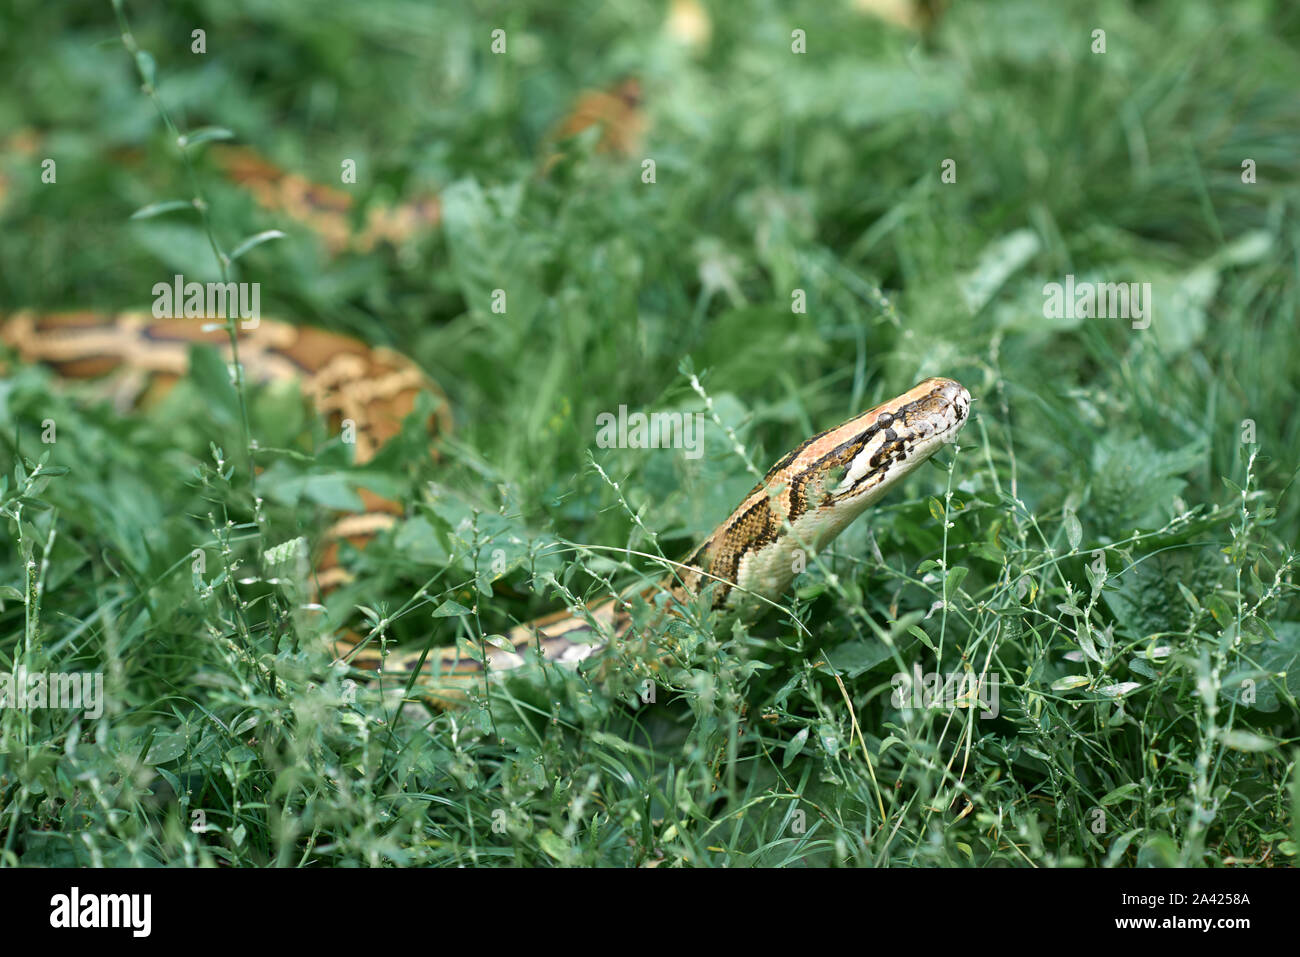 Vue latérale du long phyton couché dans l'herbe verte. Serpent rampant dans jardin. Banque D'Images